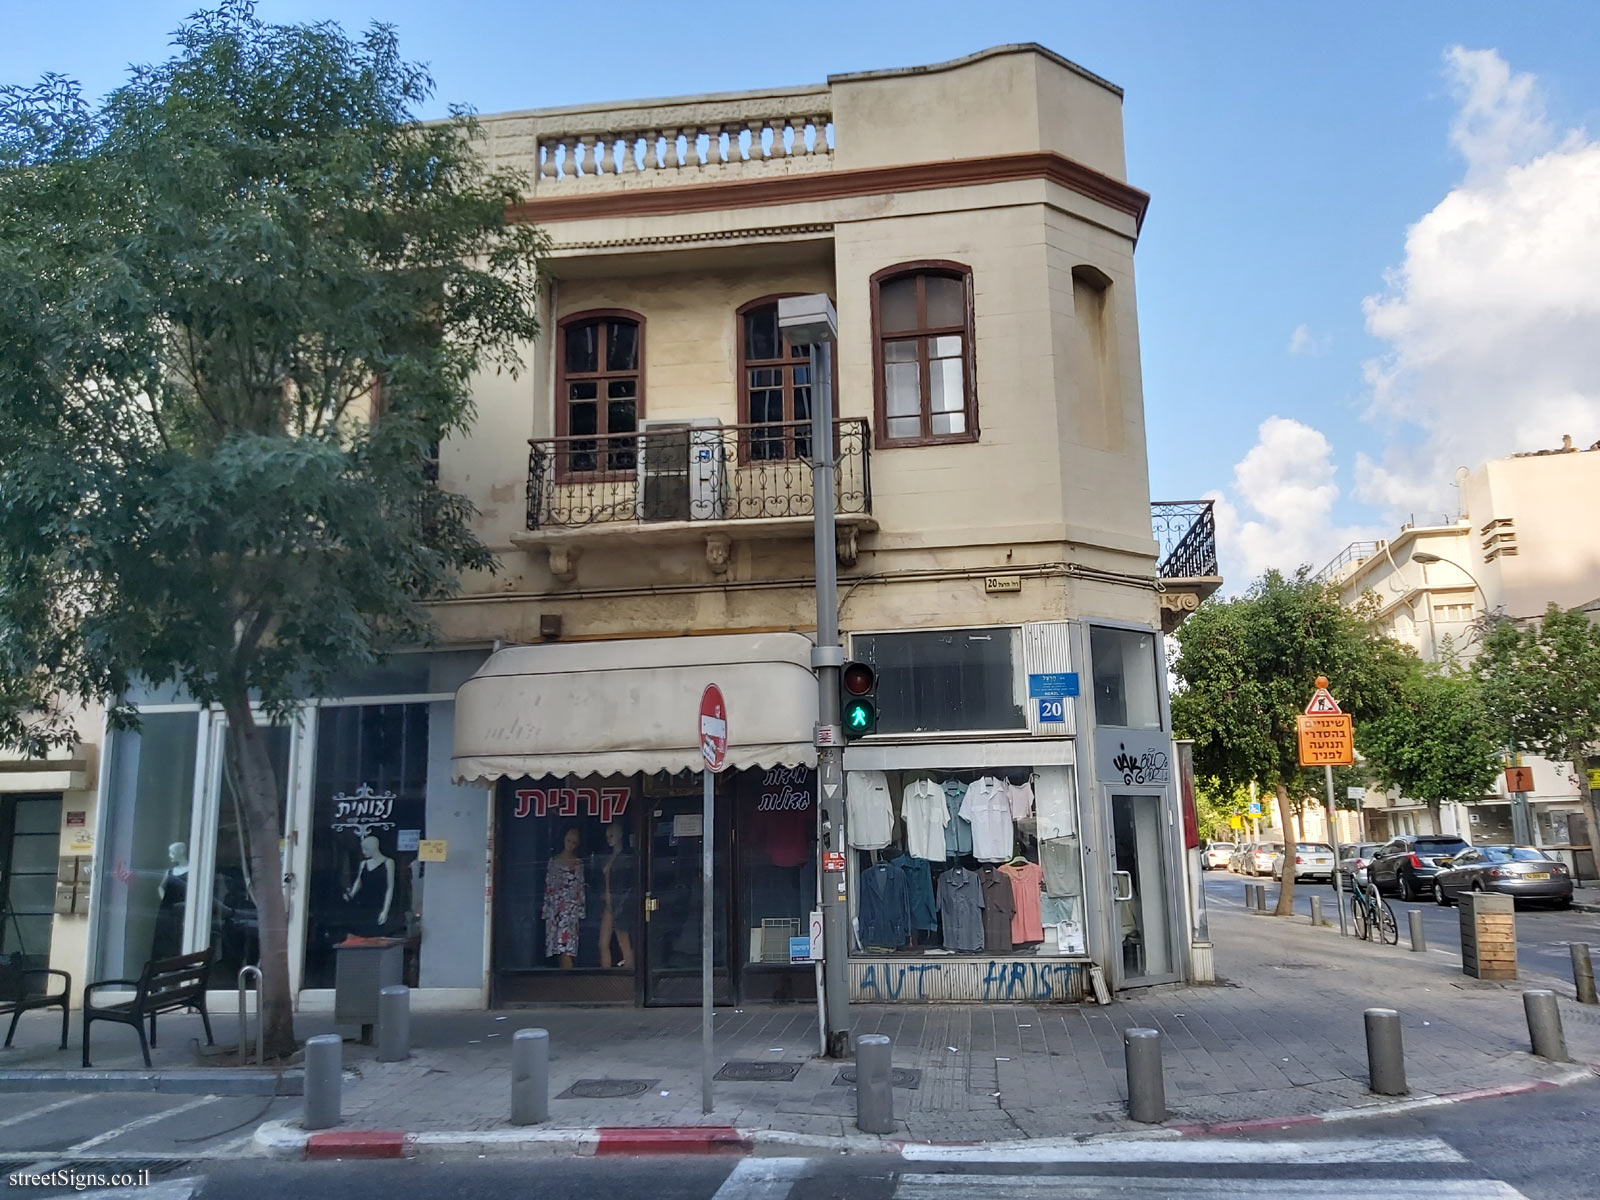 Israel and Fanya Feinberg - The houses of the founders of Tel Aviv - Herzl St 20, Tel Aviv-Yafo, Israel